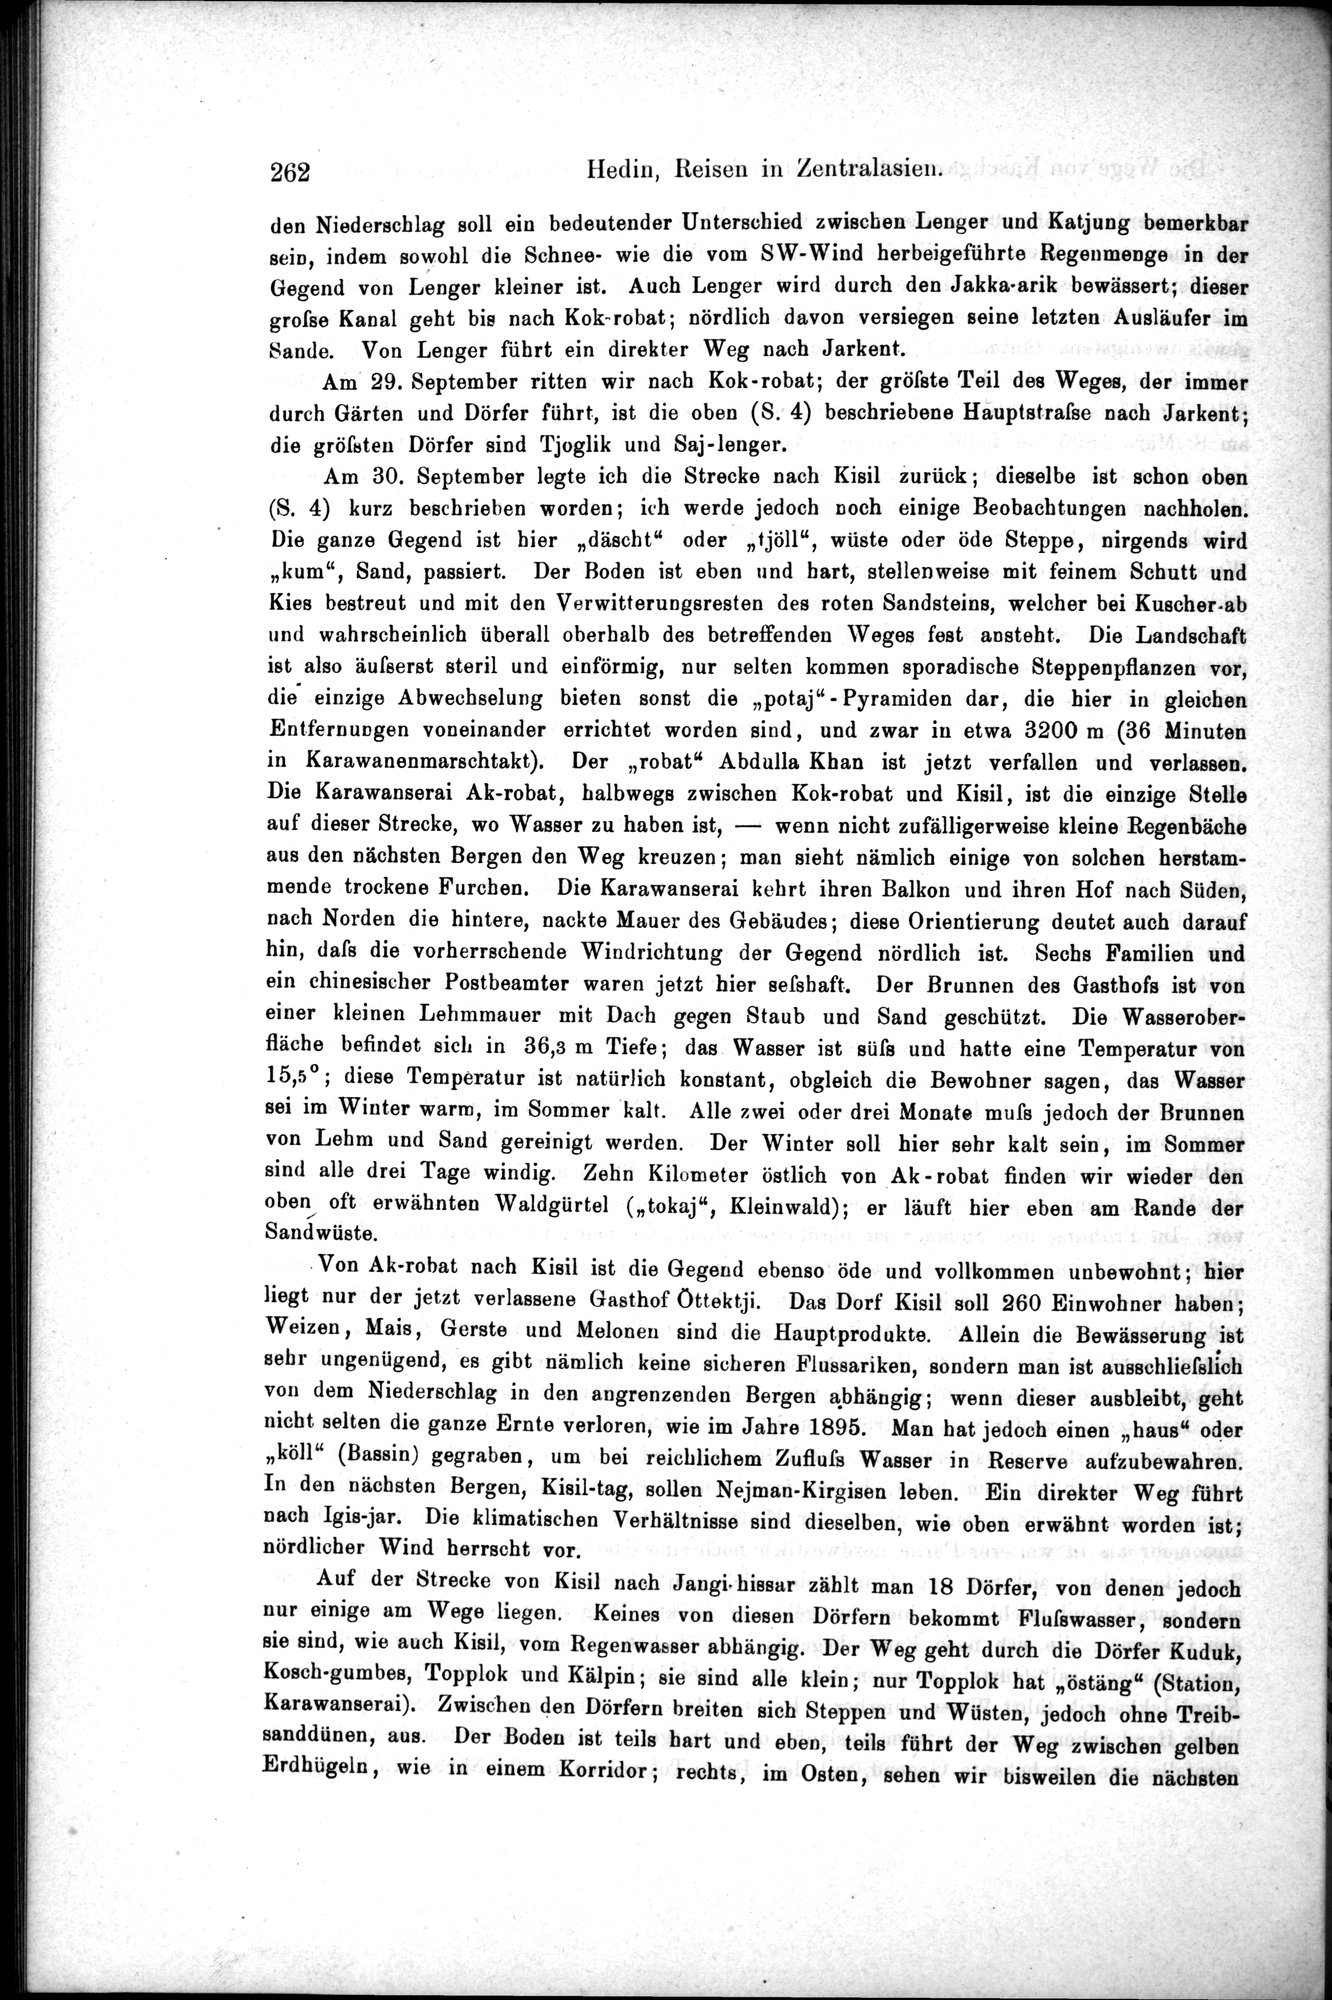 Die Geographische-Wissenschaftlichen Ergebnisse meiner Reisen in Zentralasien, 1894-1897 : vol.1 / Page 274 (Grayscale High Resolution Image)